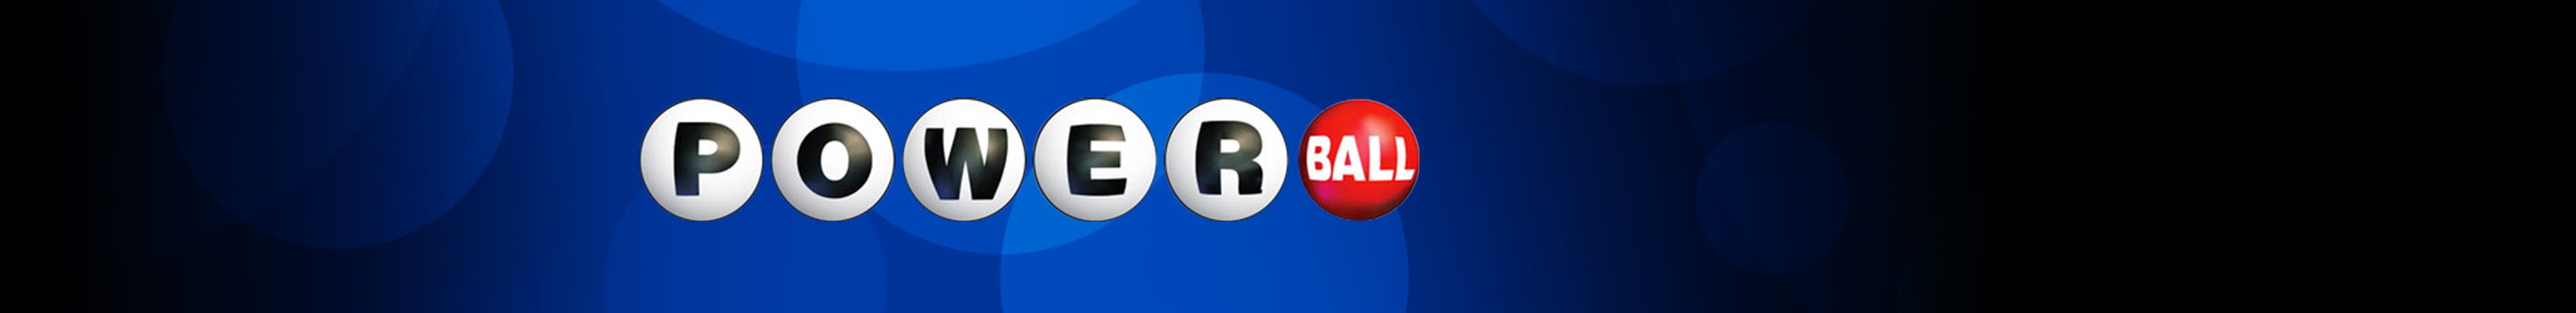 Powerball – největší loterie na světě